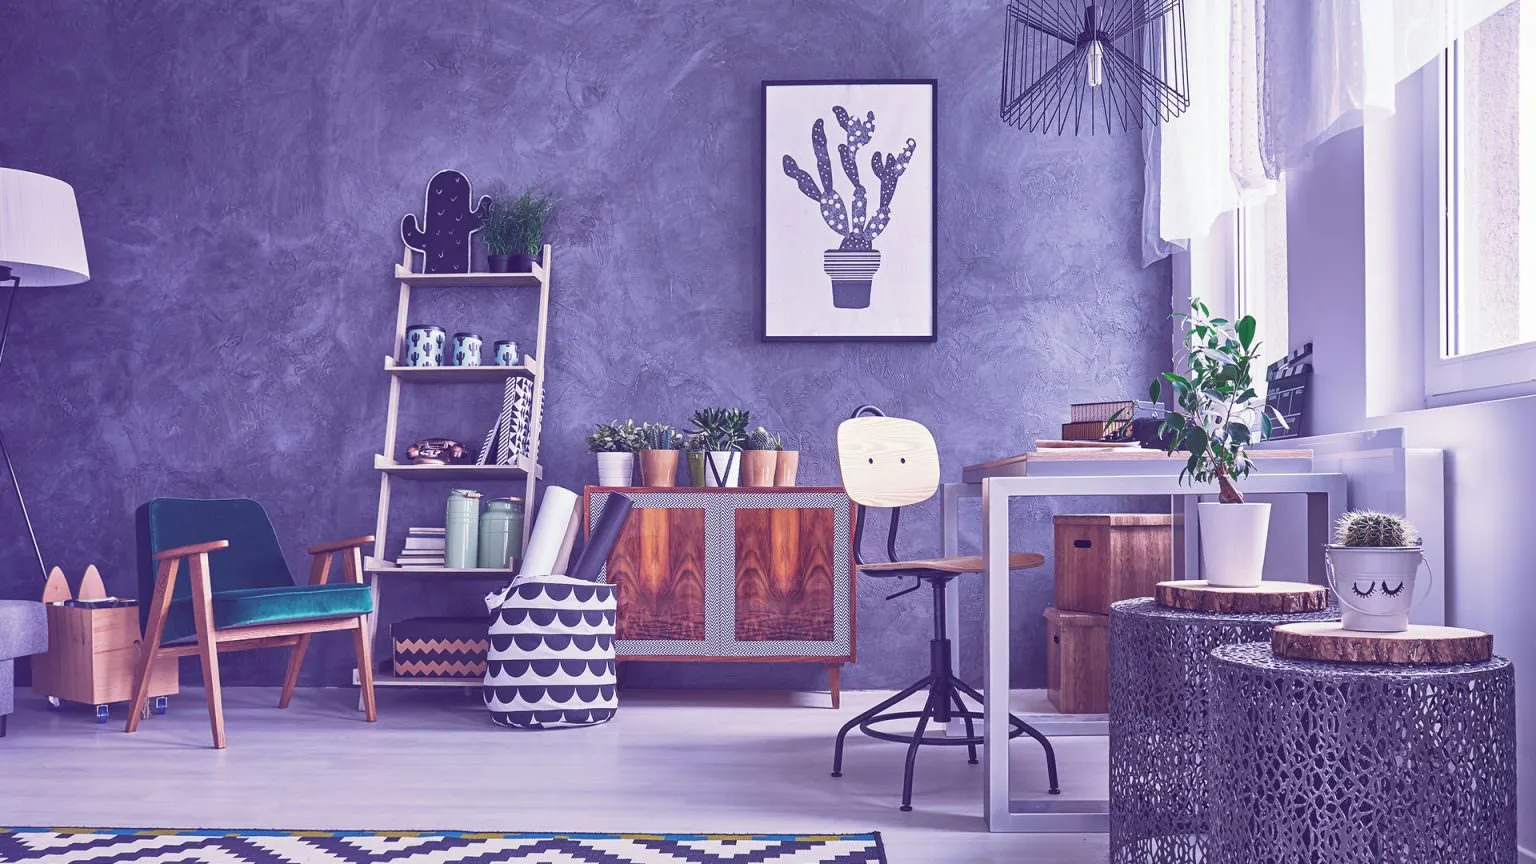 Como decorar a sala? Conheça 6 ideias boas e baratas - Blog da Linea